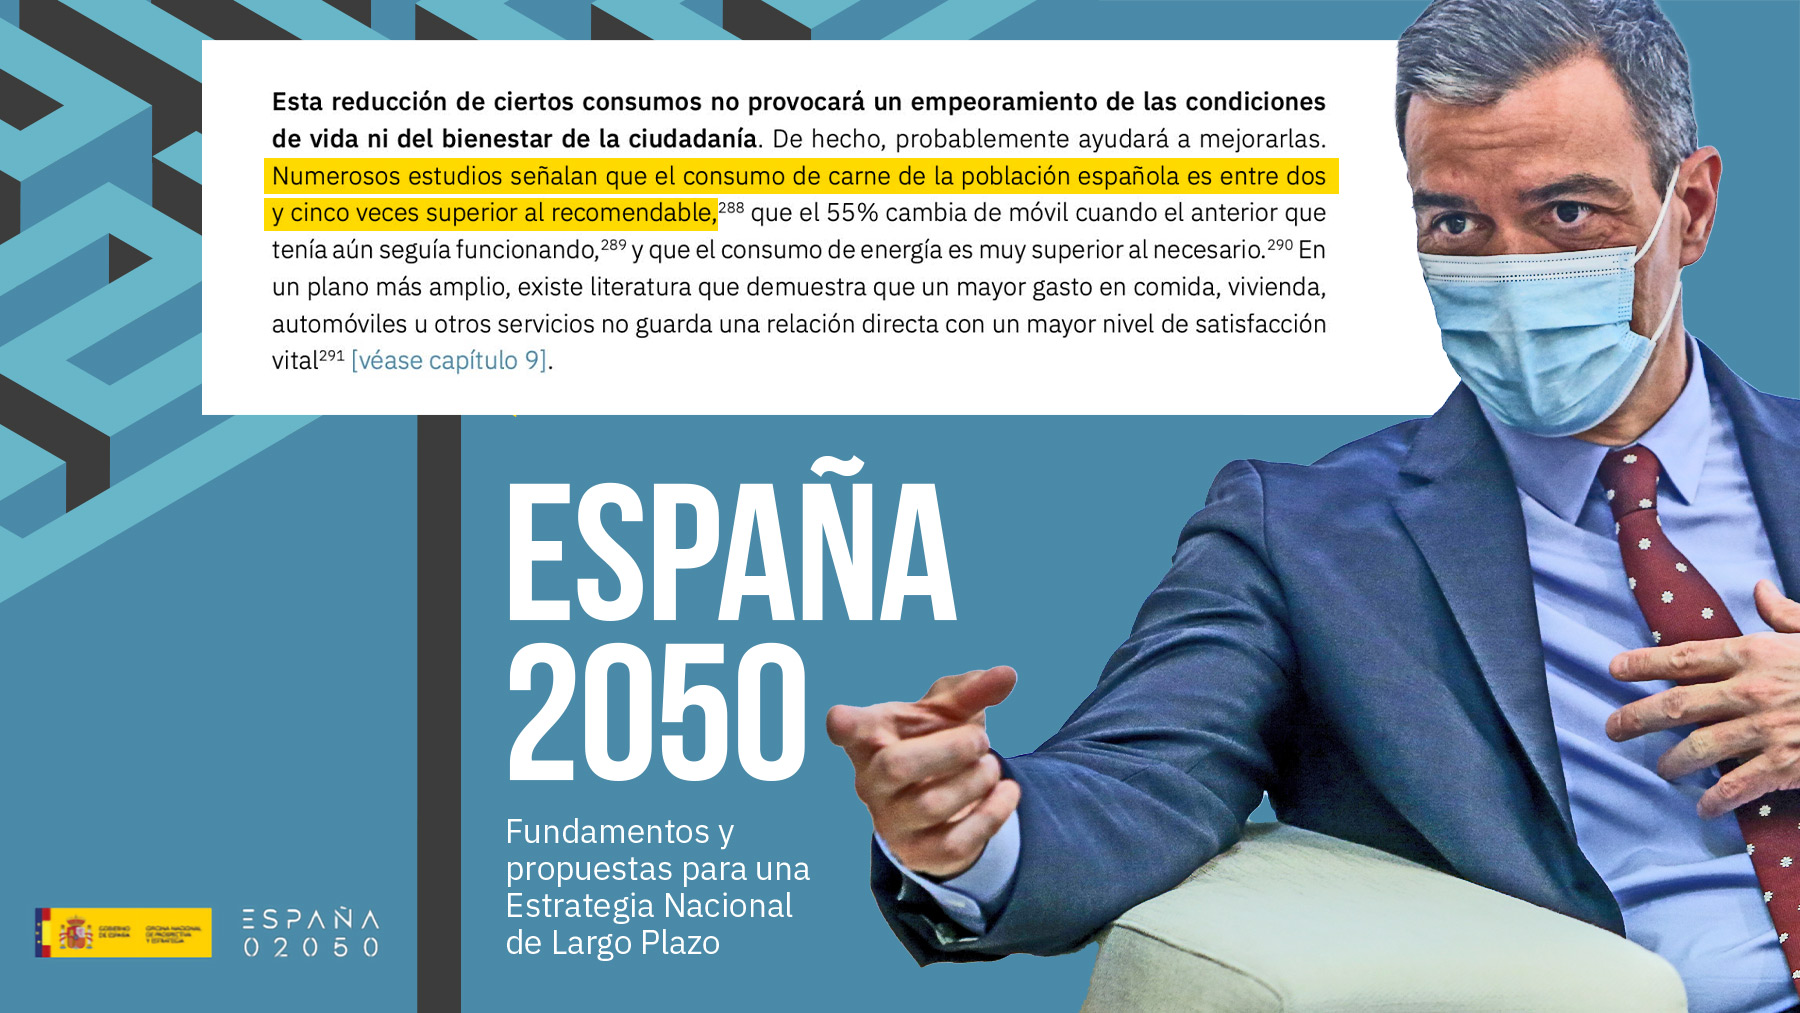 El documento de la ‘España 2050’ abogando por comer menos carne.